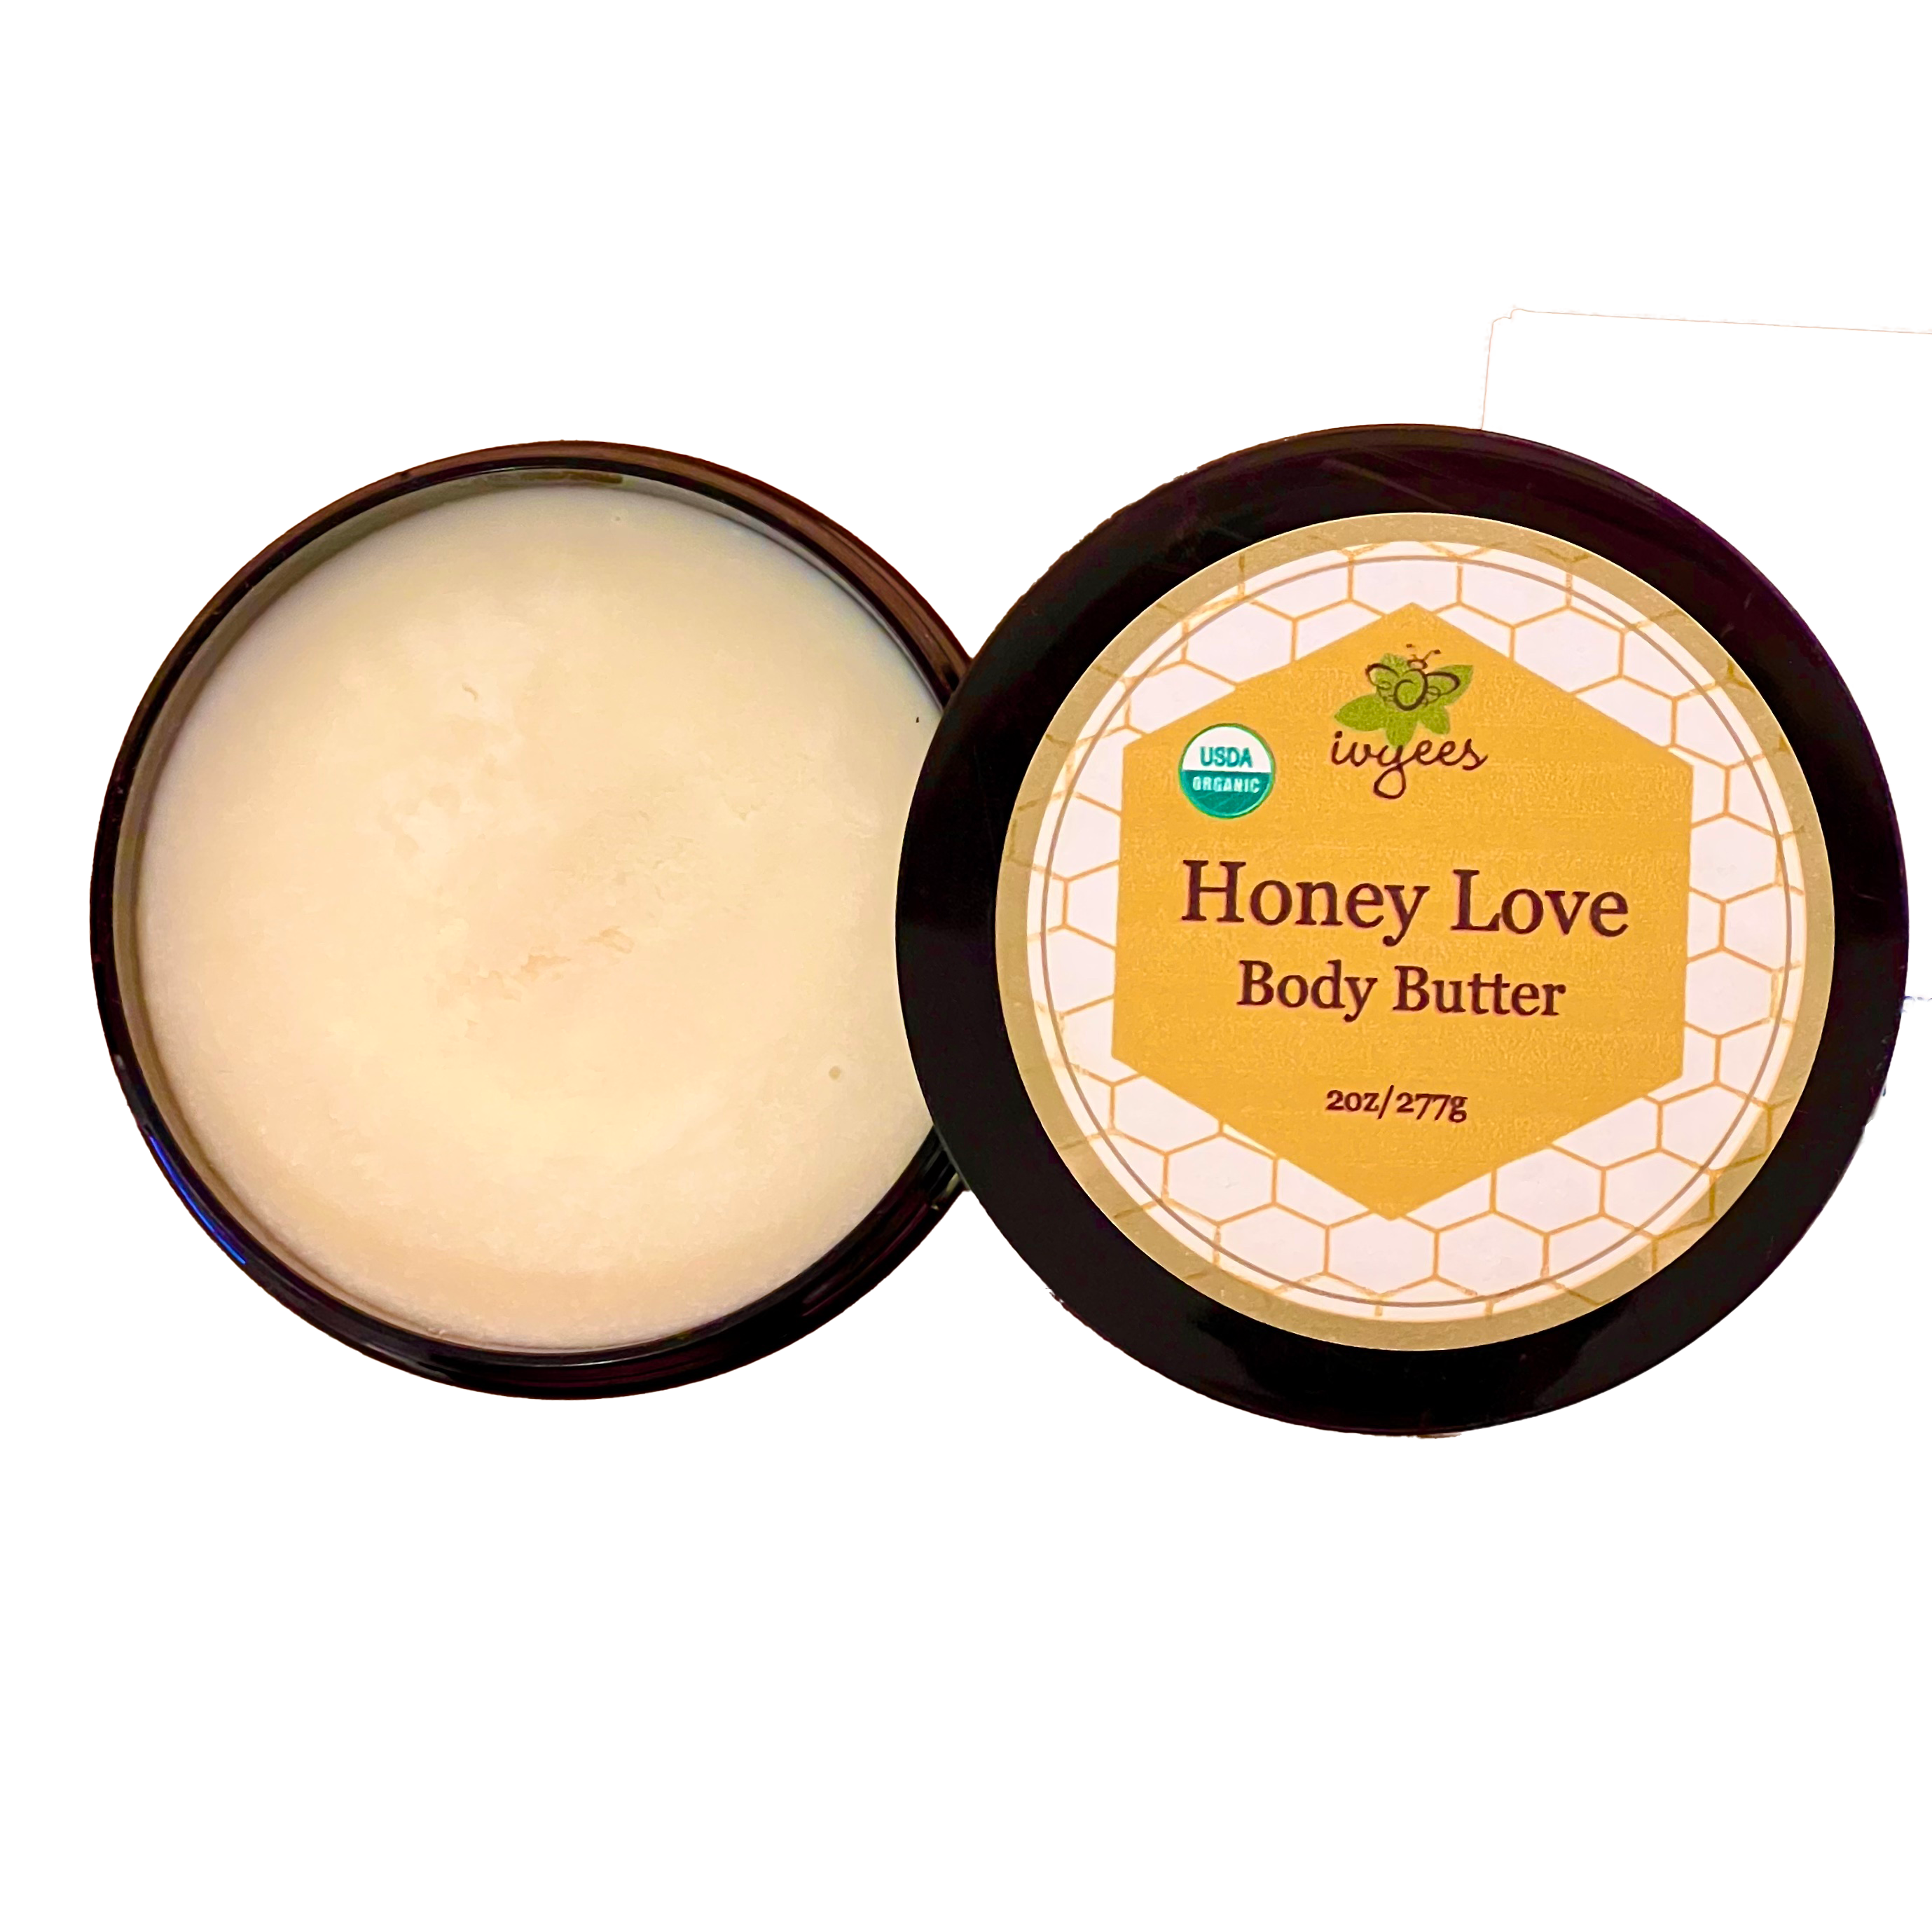 Honey Love BB for website